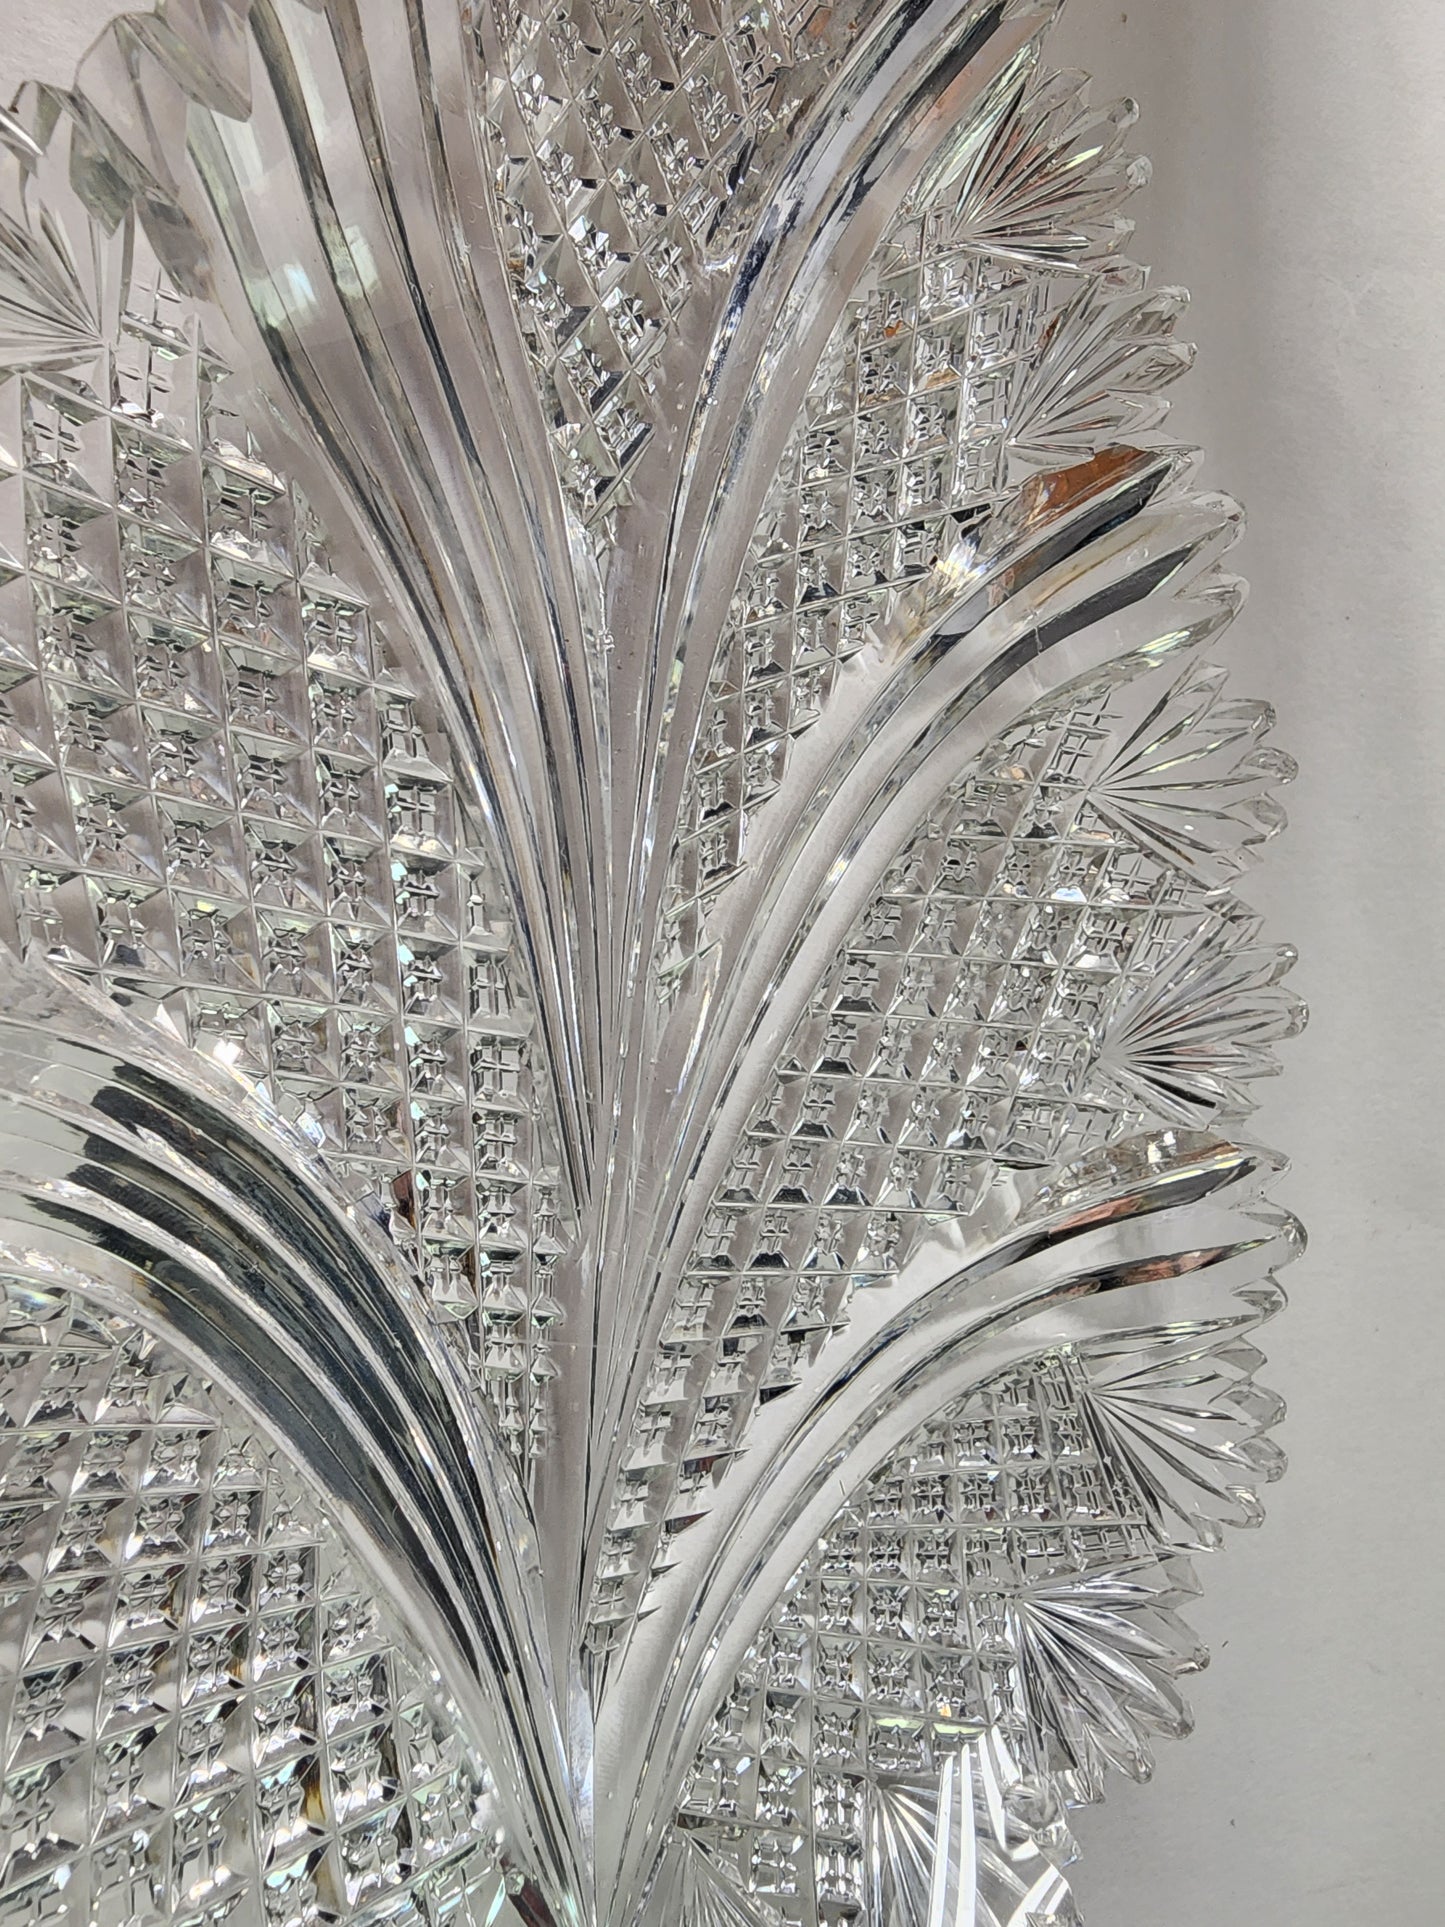 ABP Crystal Cut Glass Leaf dish